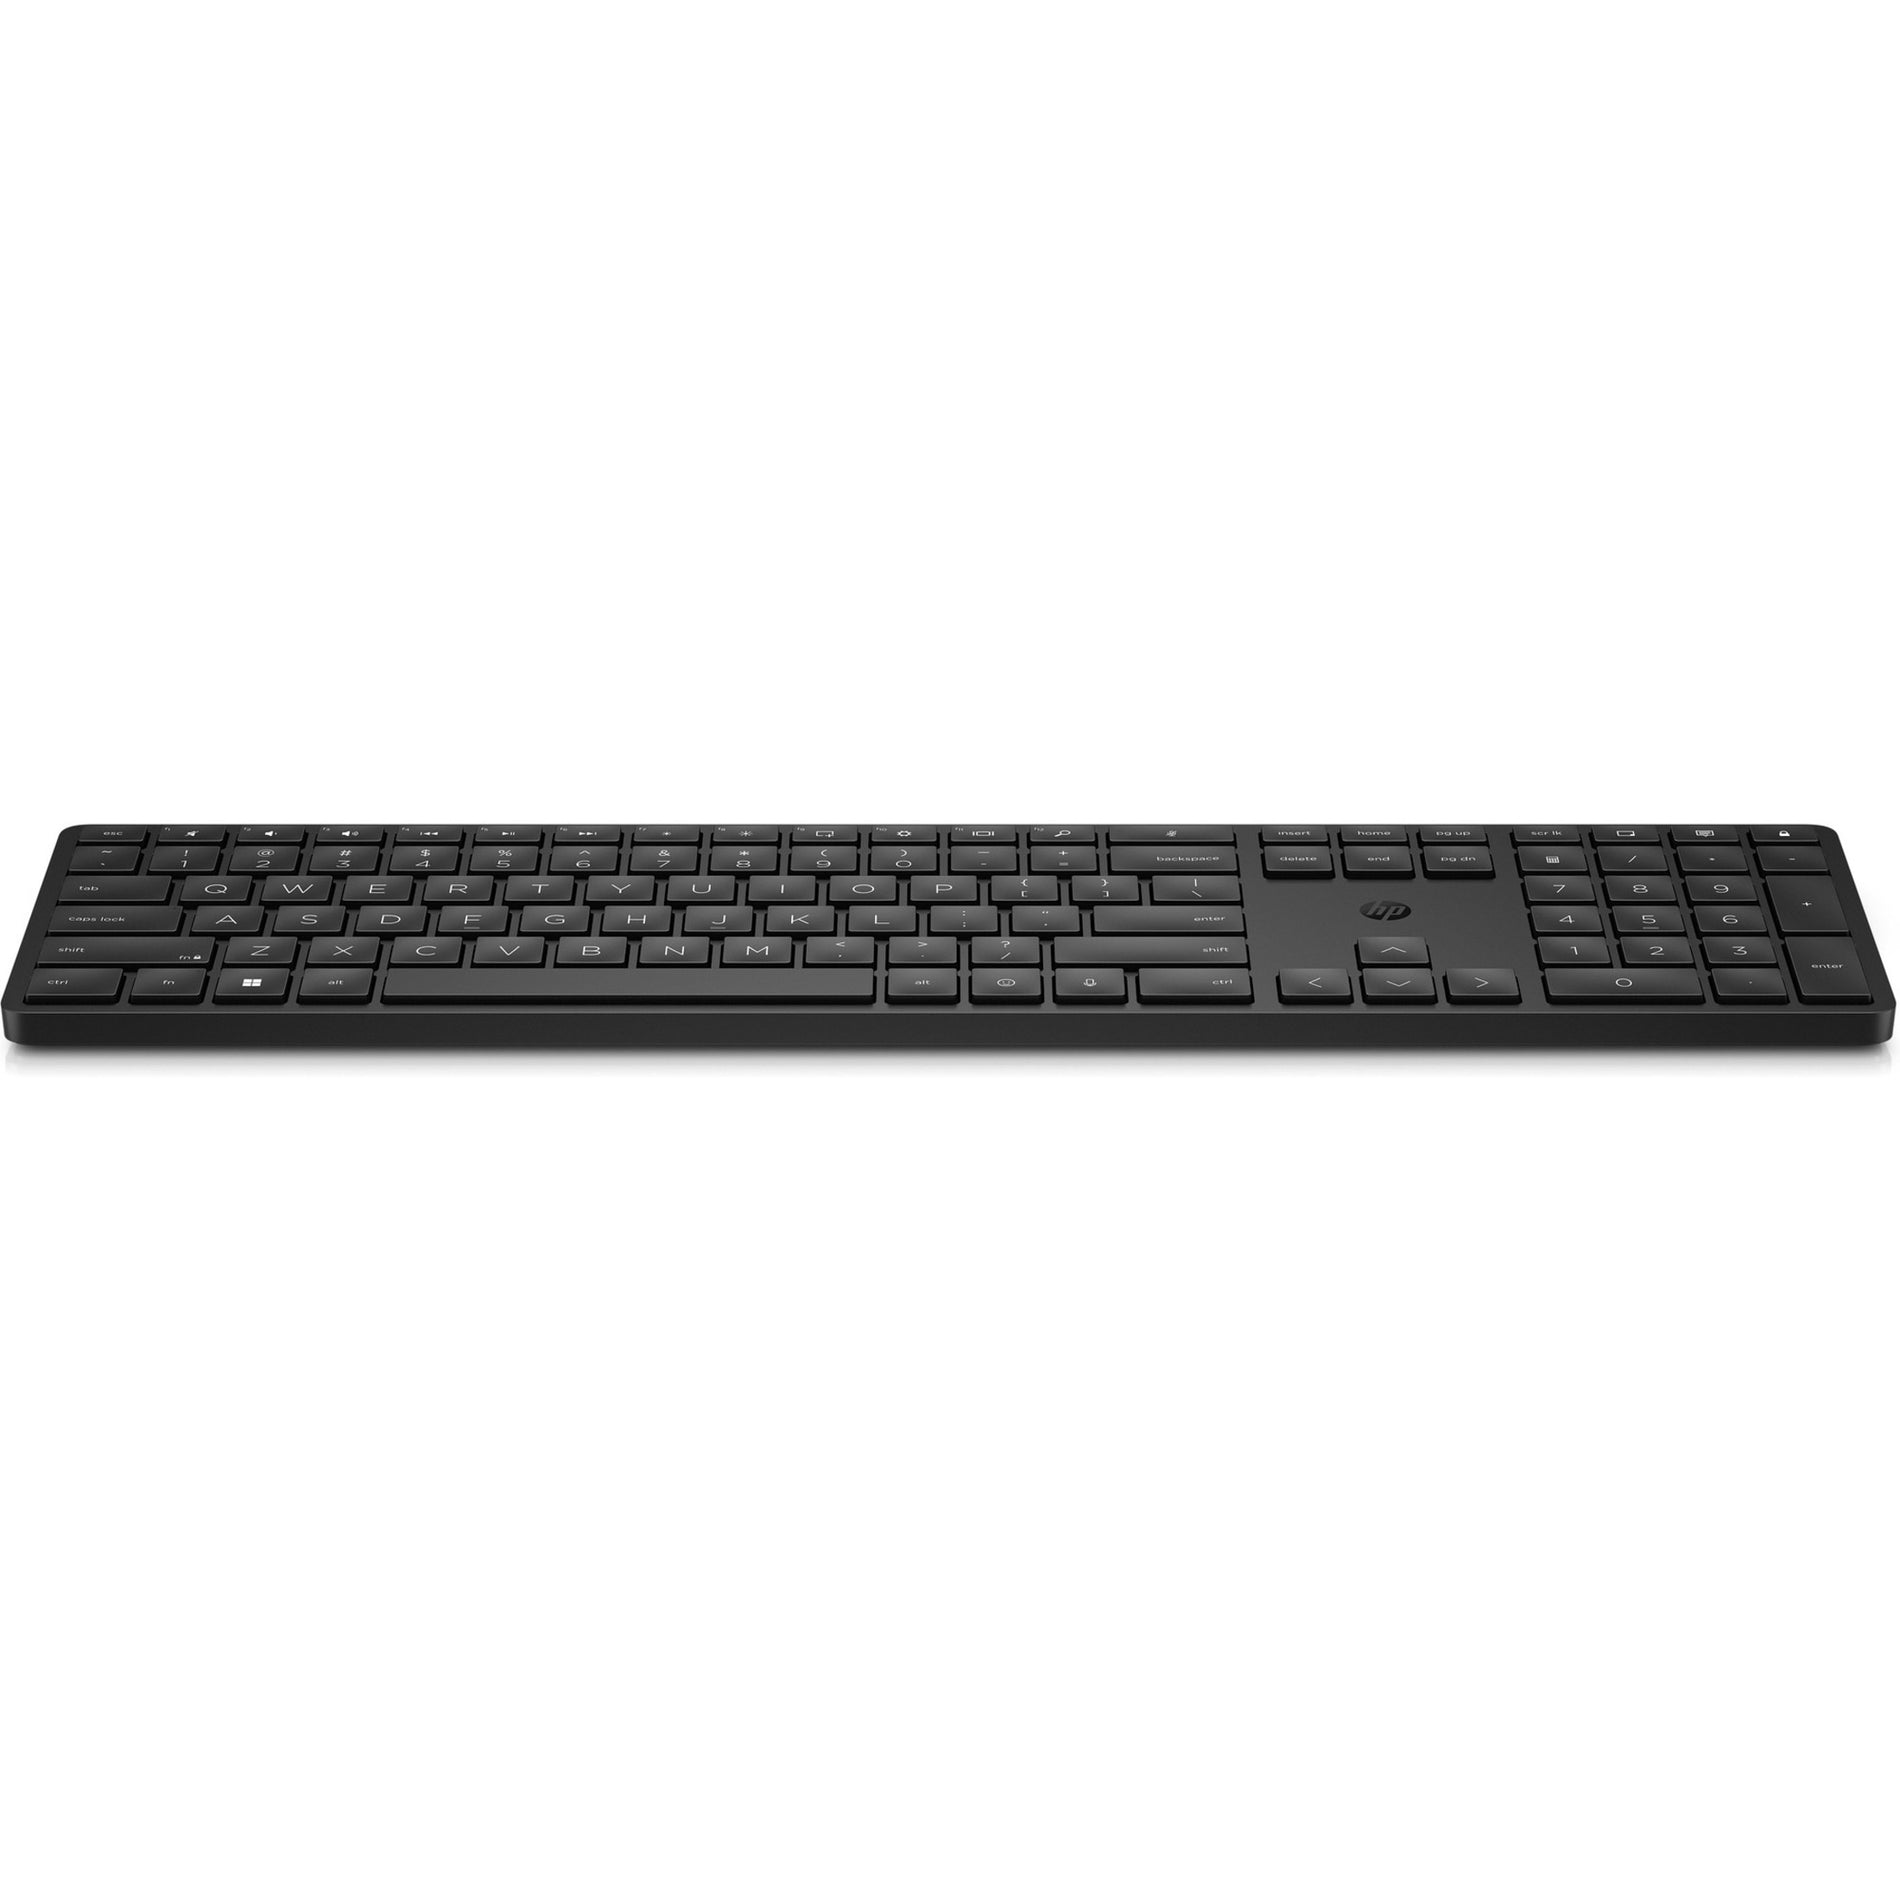 HP 455 Programmable Wireless Keyboard English (US) Battery Indicator LED Indicator